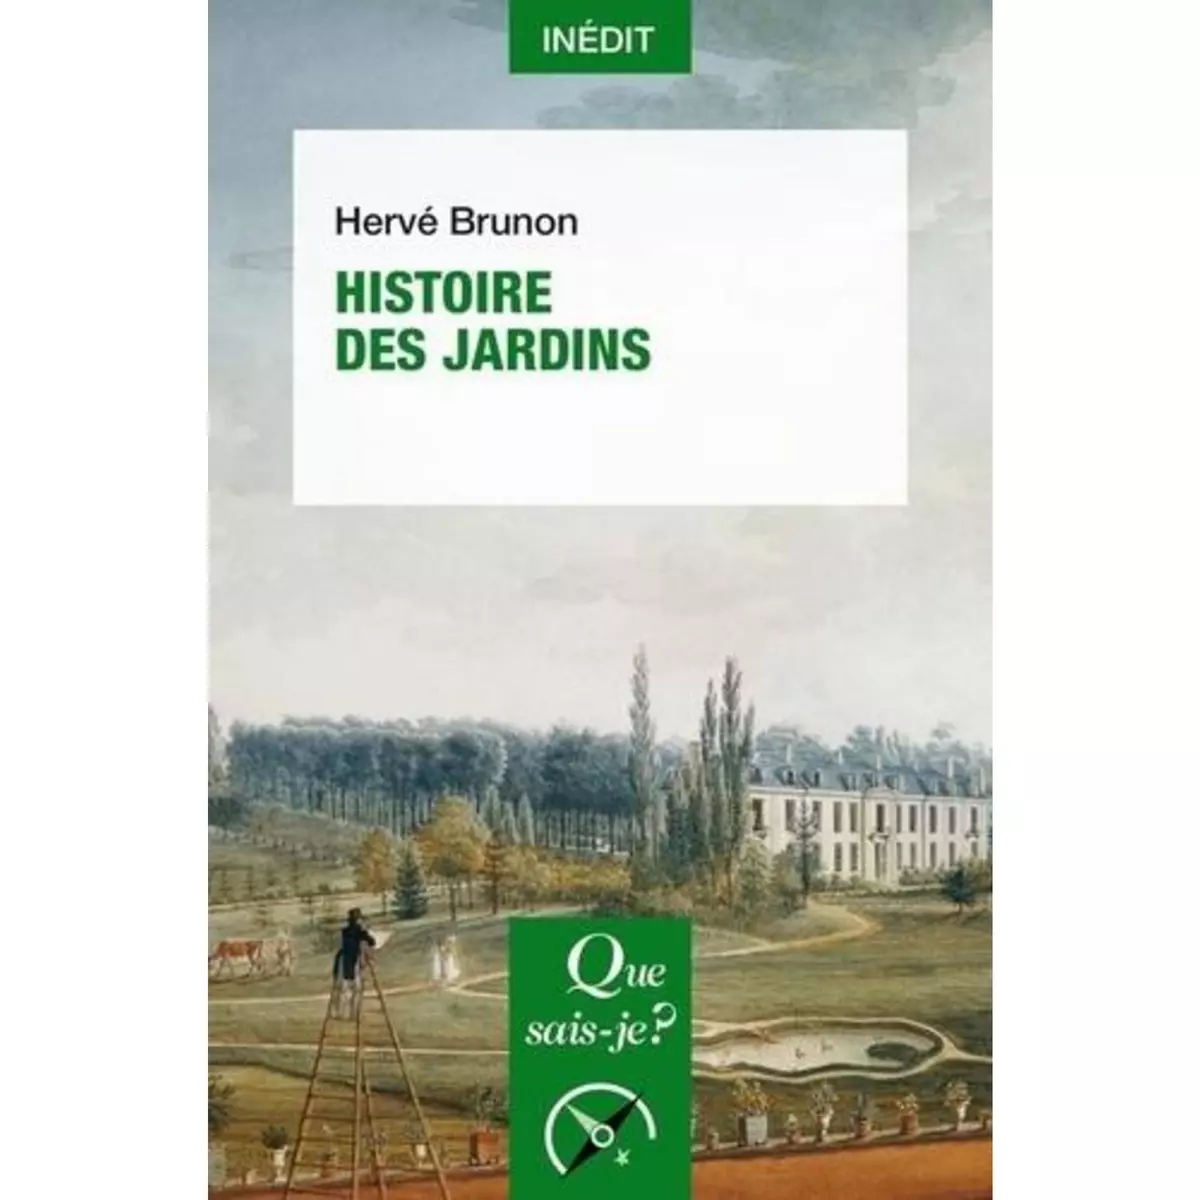  HISTOIRE DES JARDINS, Brunon Hervé